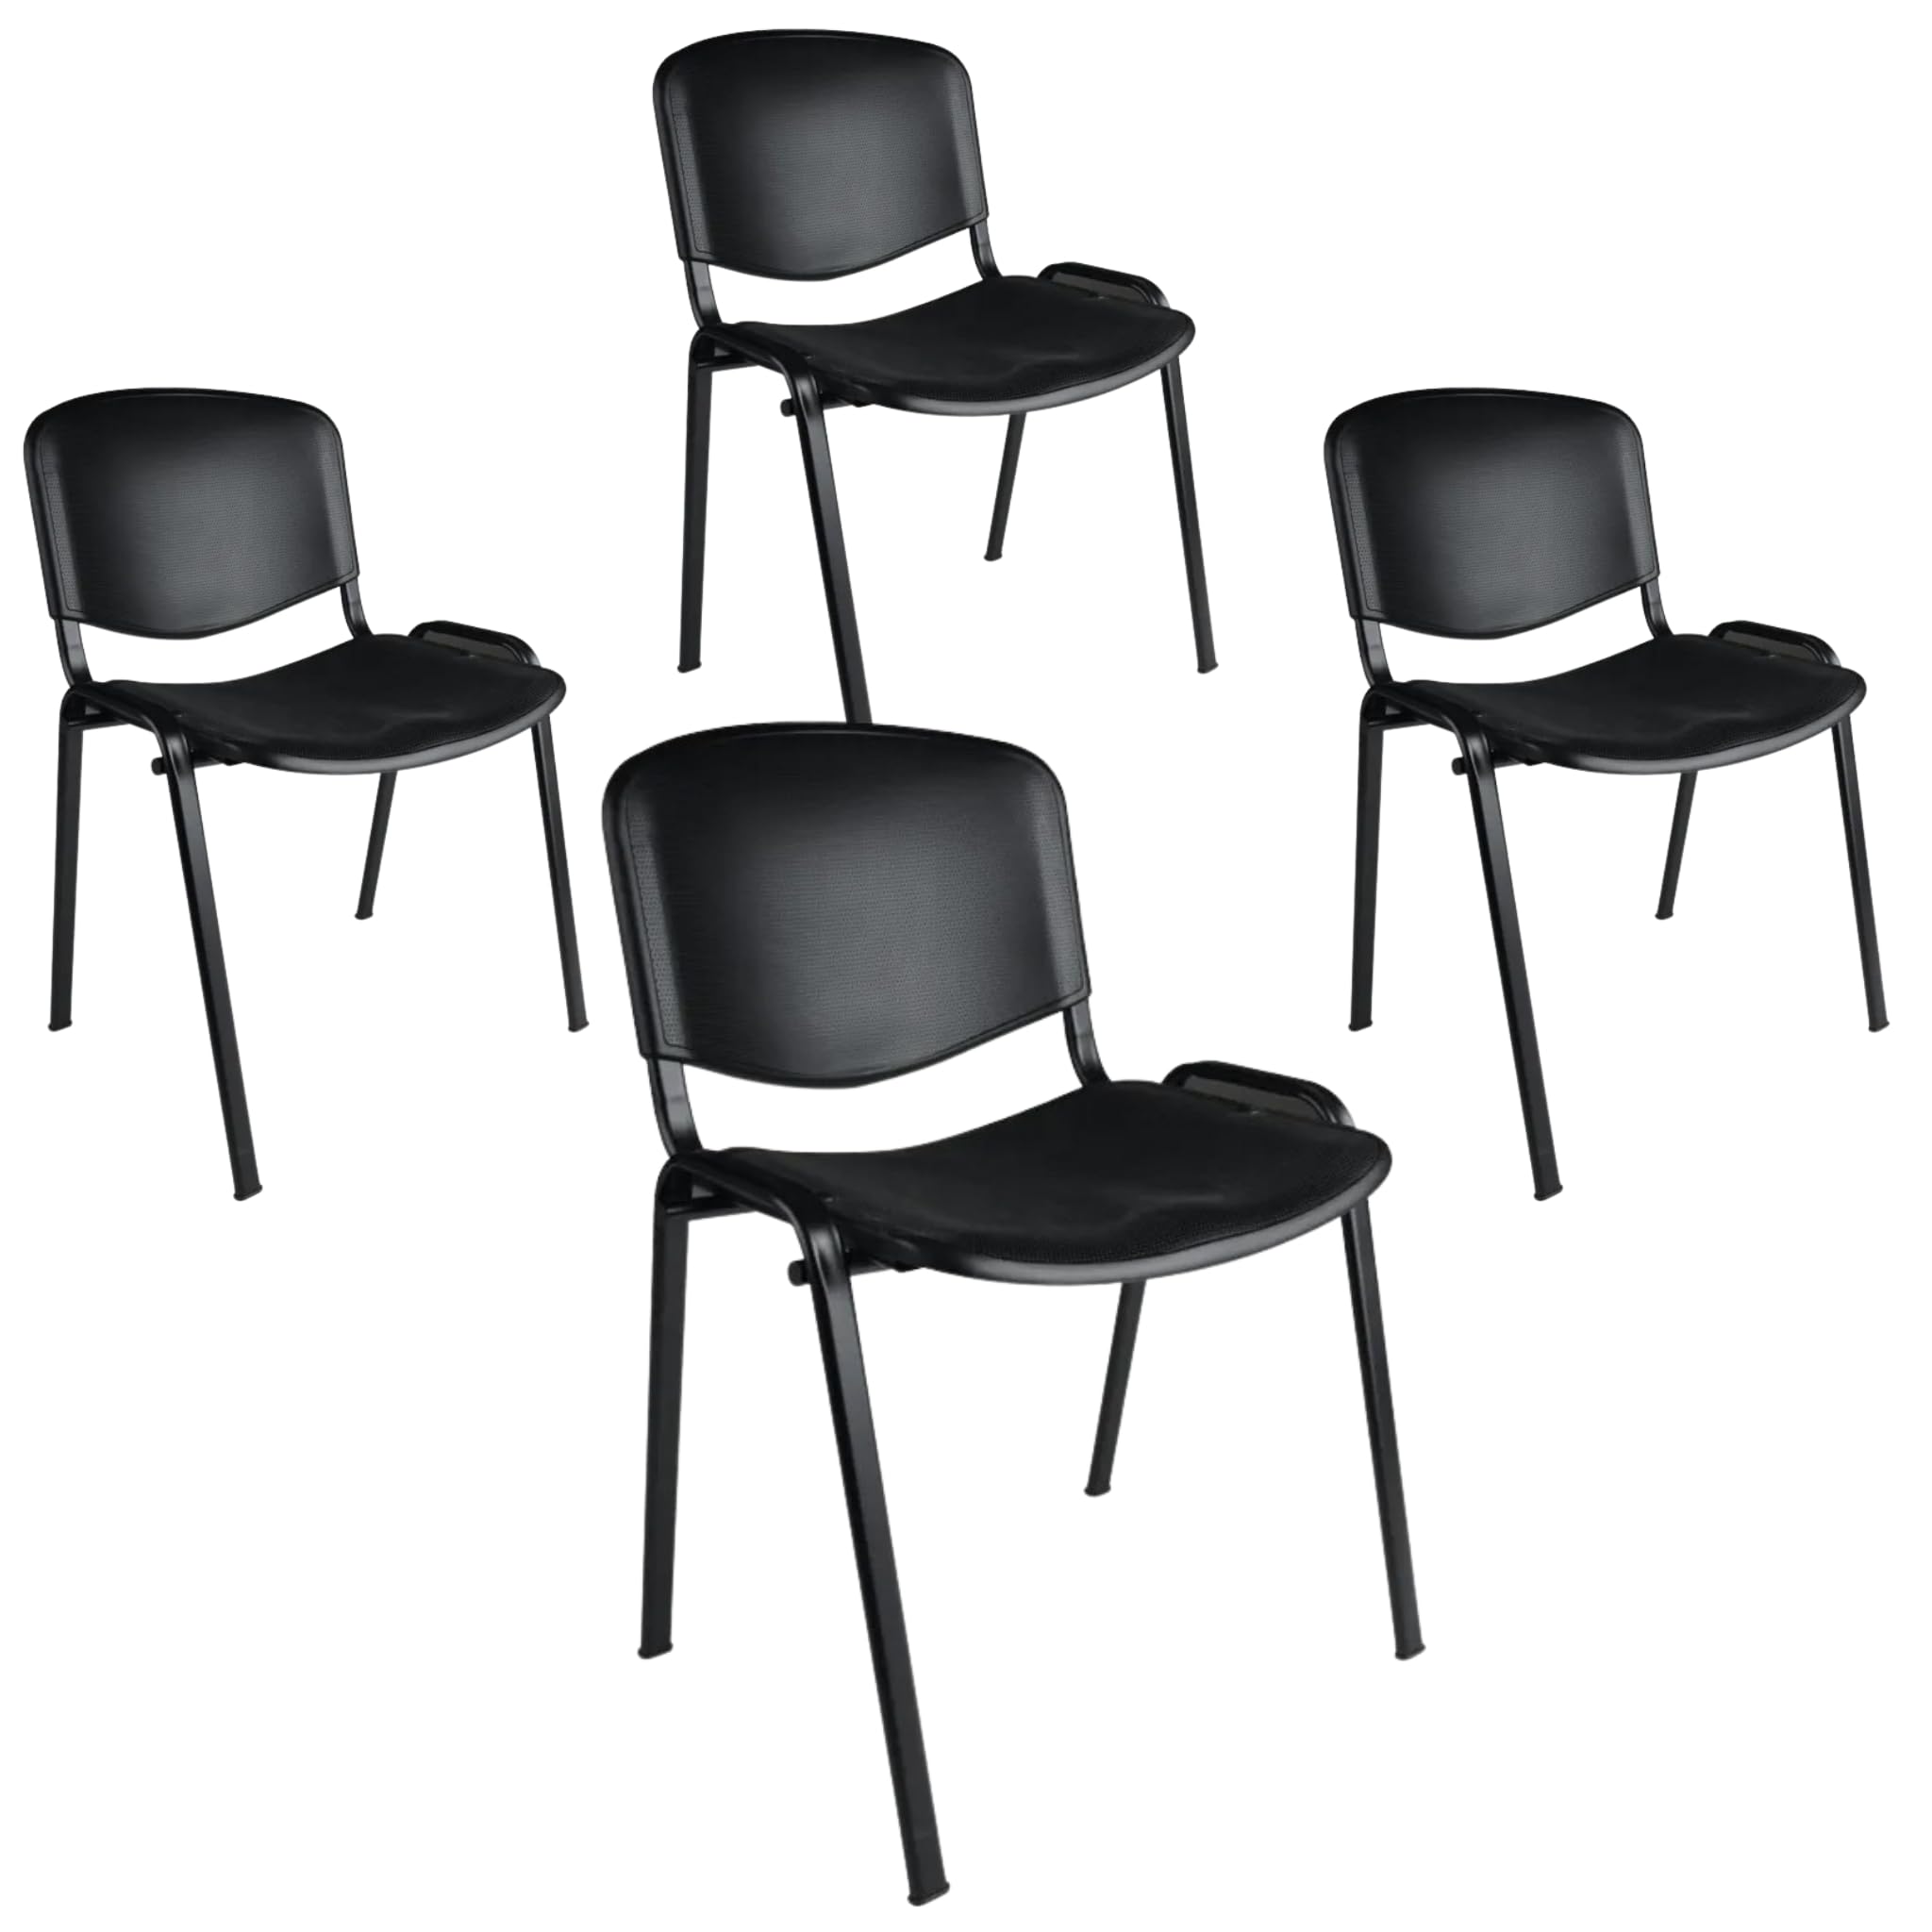 Büro & More 4er Set Besucherstühle, stapelbarer Konferenzstuhl, mit Sitz und Rückenlehne aus Kunststoff. (Schwarz)